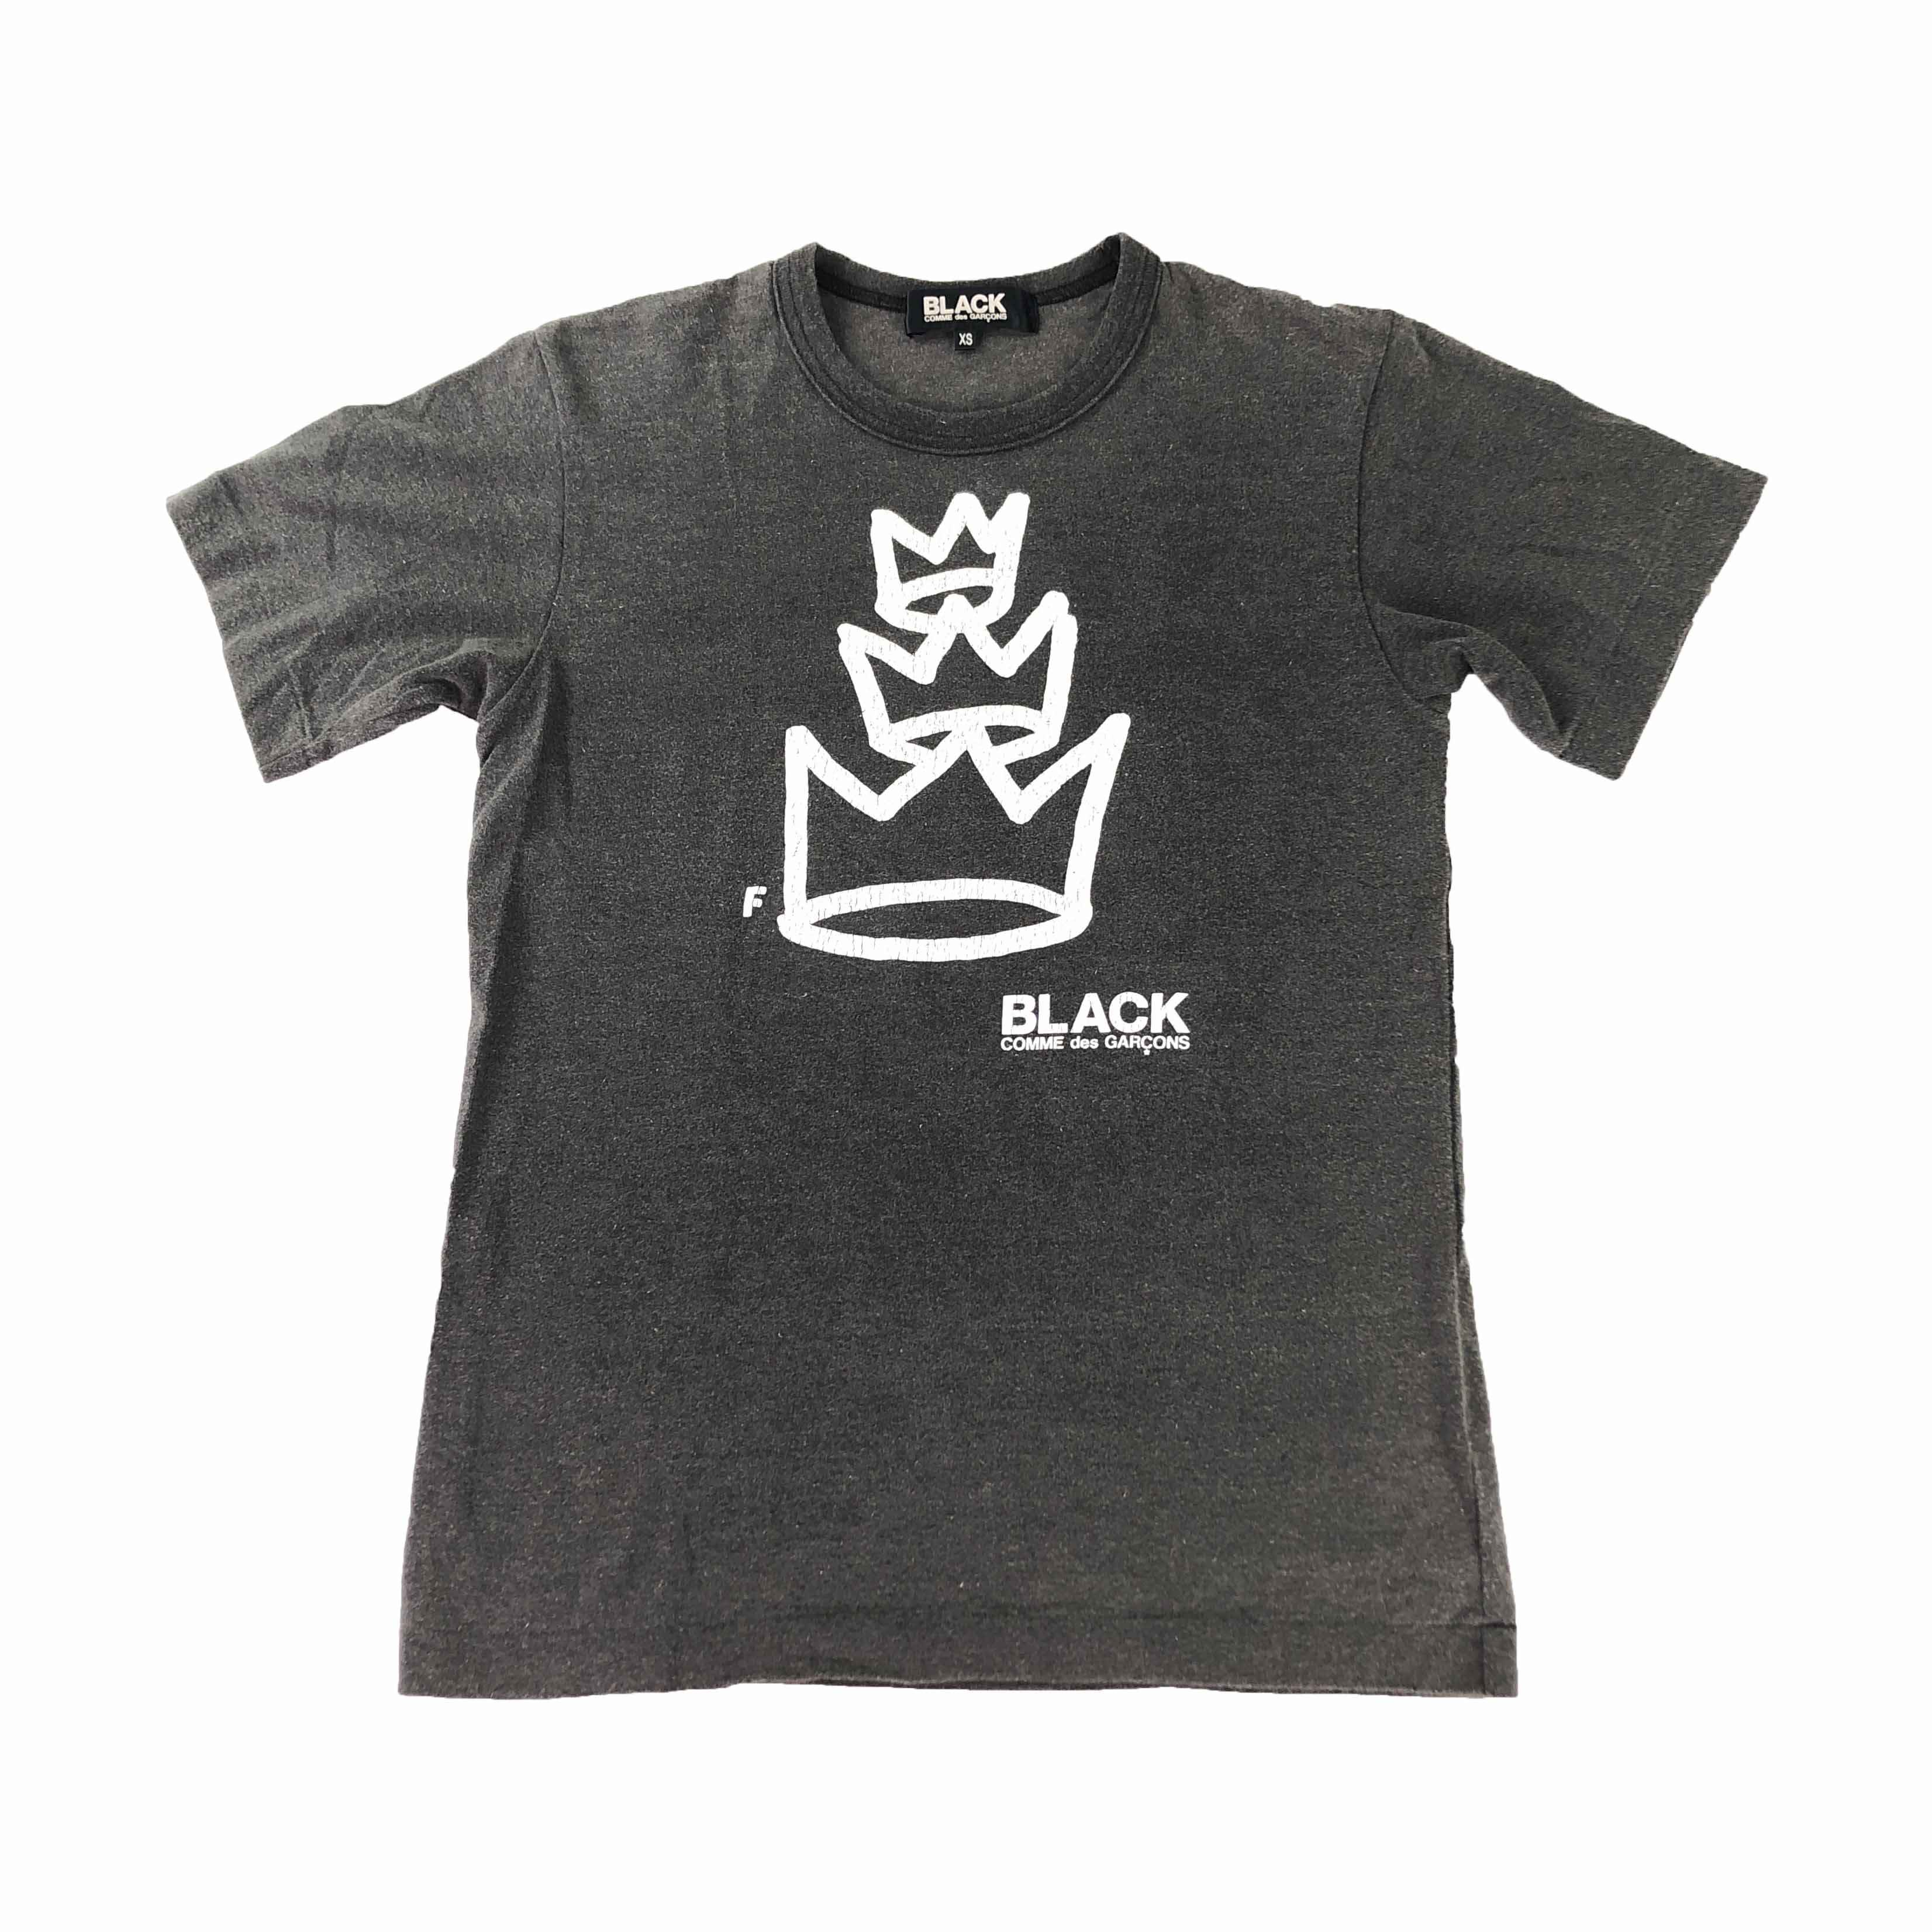 [Comme Des Garcons] BLACK Crown Graphic Tshirt - Size XS